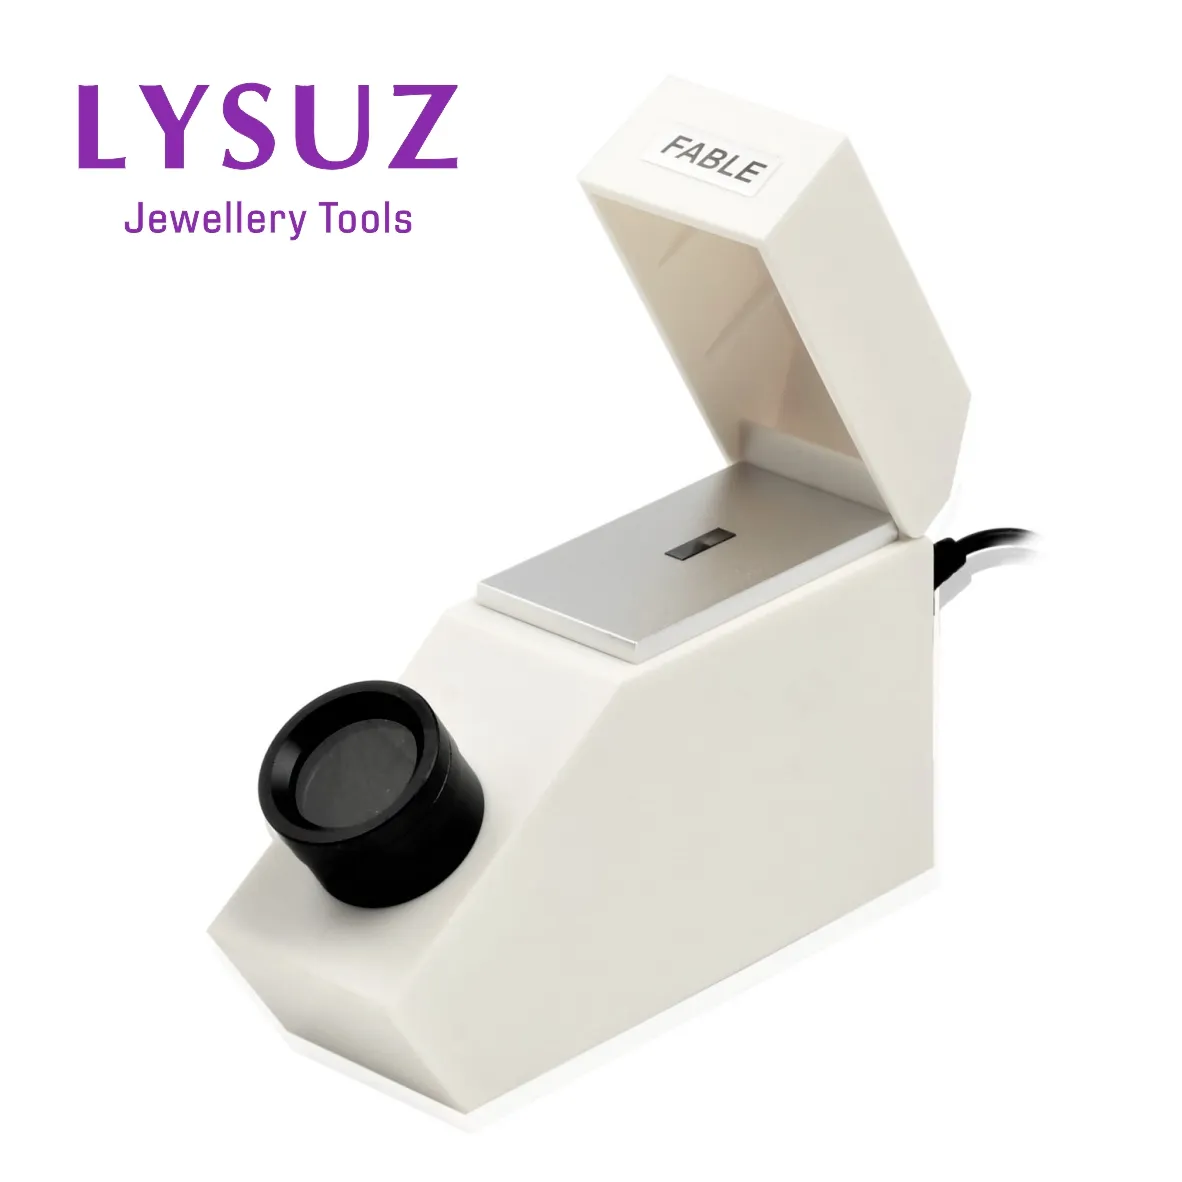 Refractómetro de gemas con índice de refracción de prueba de luz incorporado Instrumentos de identificación de joyas Herramientas gemelógicas